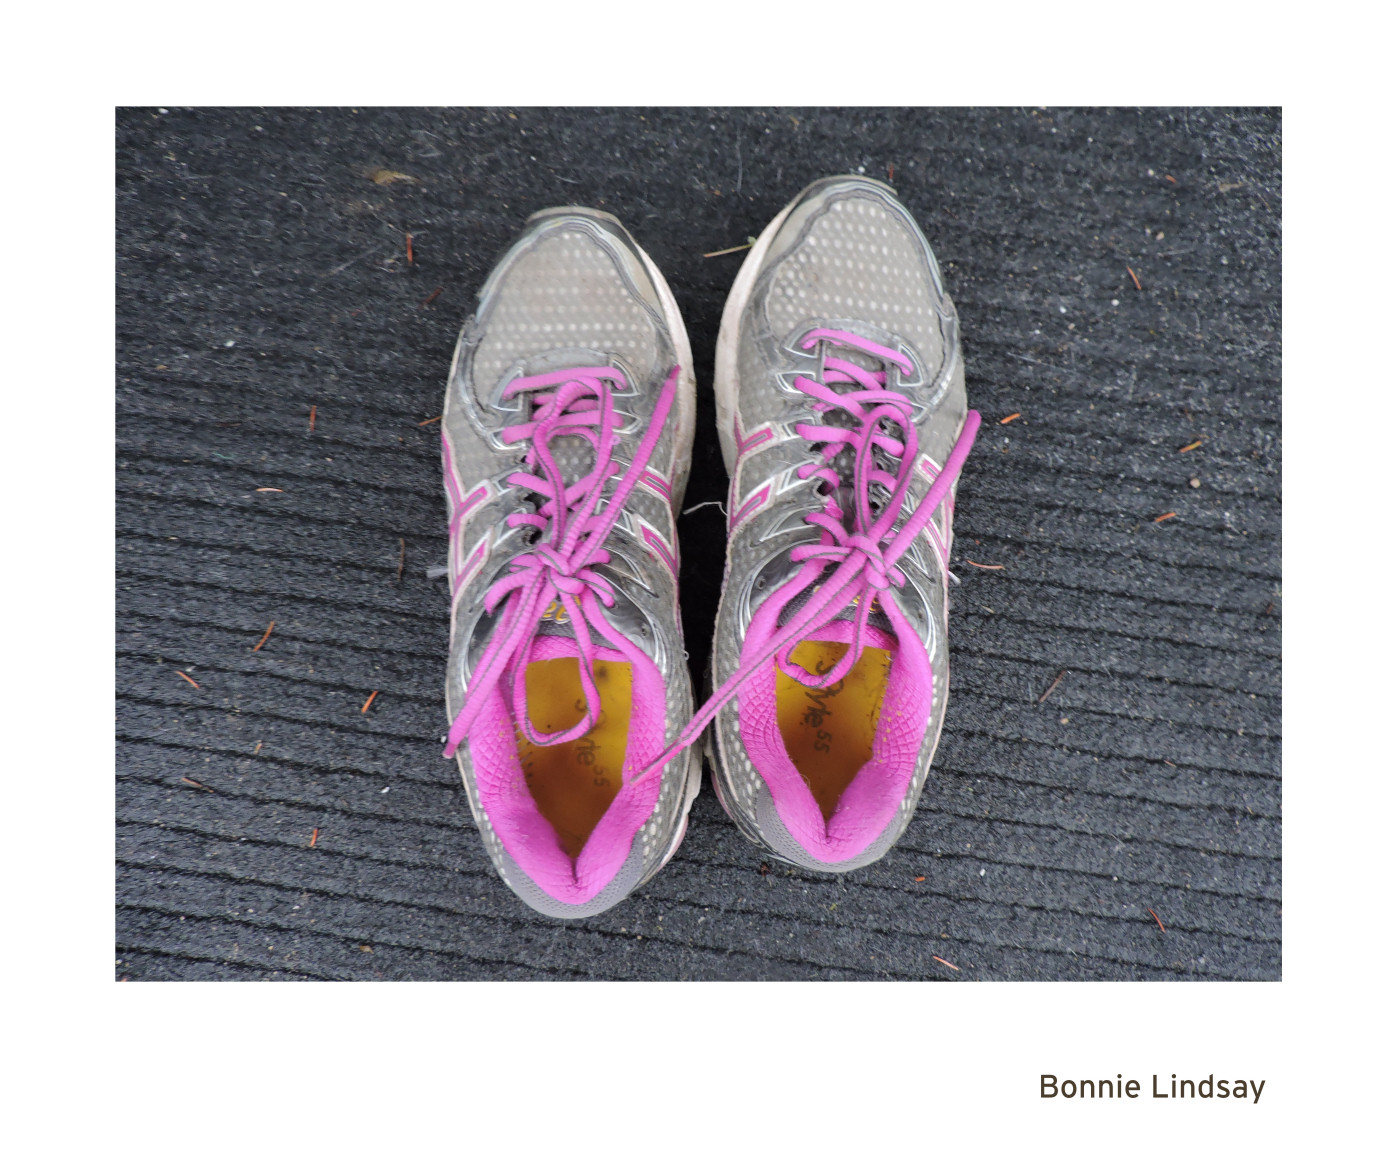 PV 26 - Lindsay, Bonnie - Sneakers - Listowel